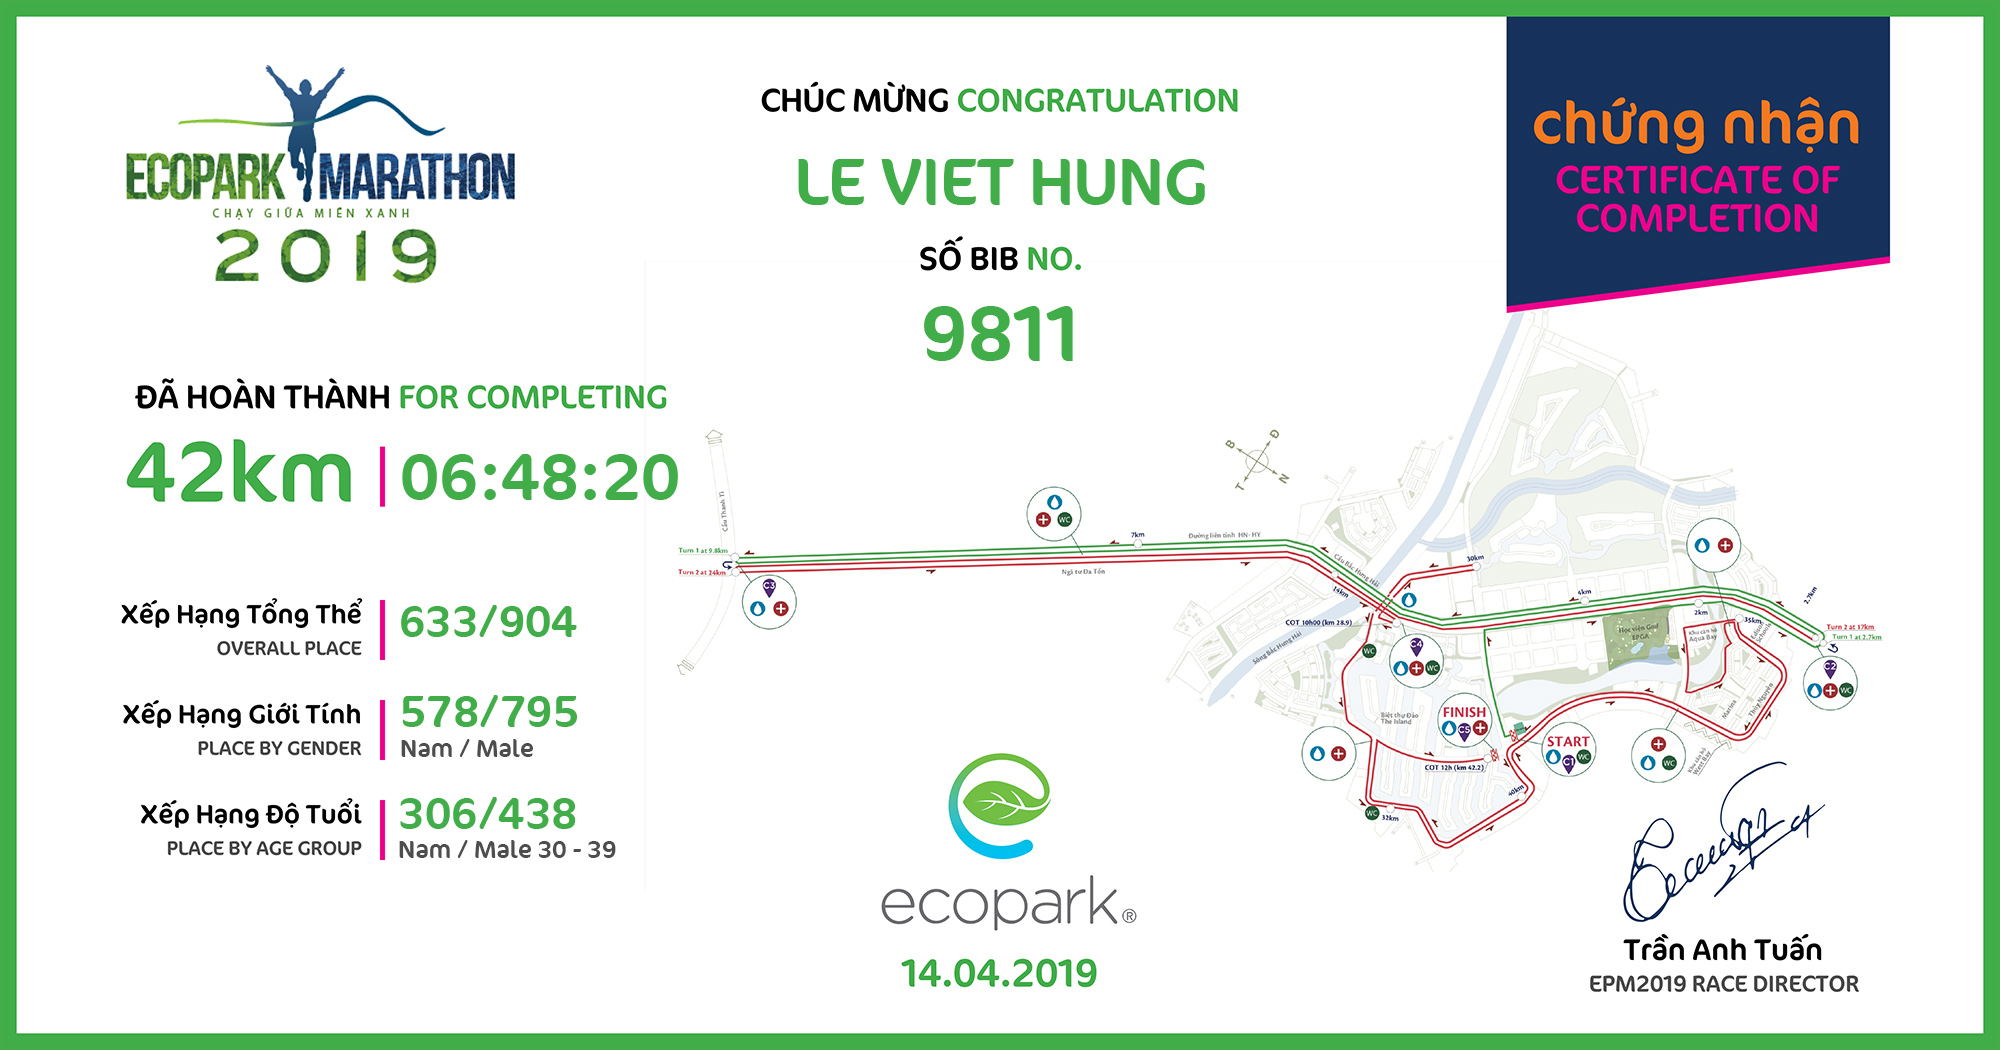 9811 - Le Viet Hung